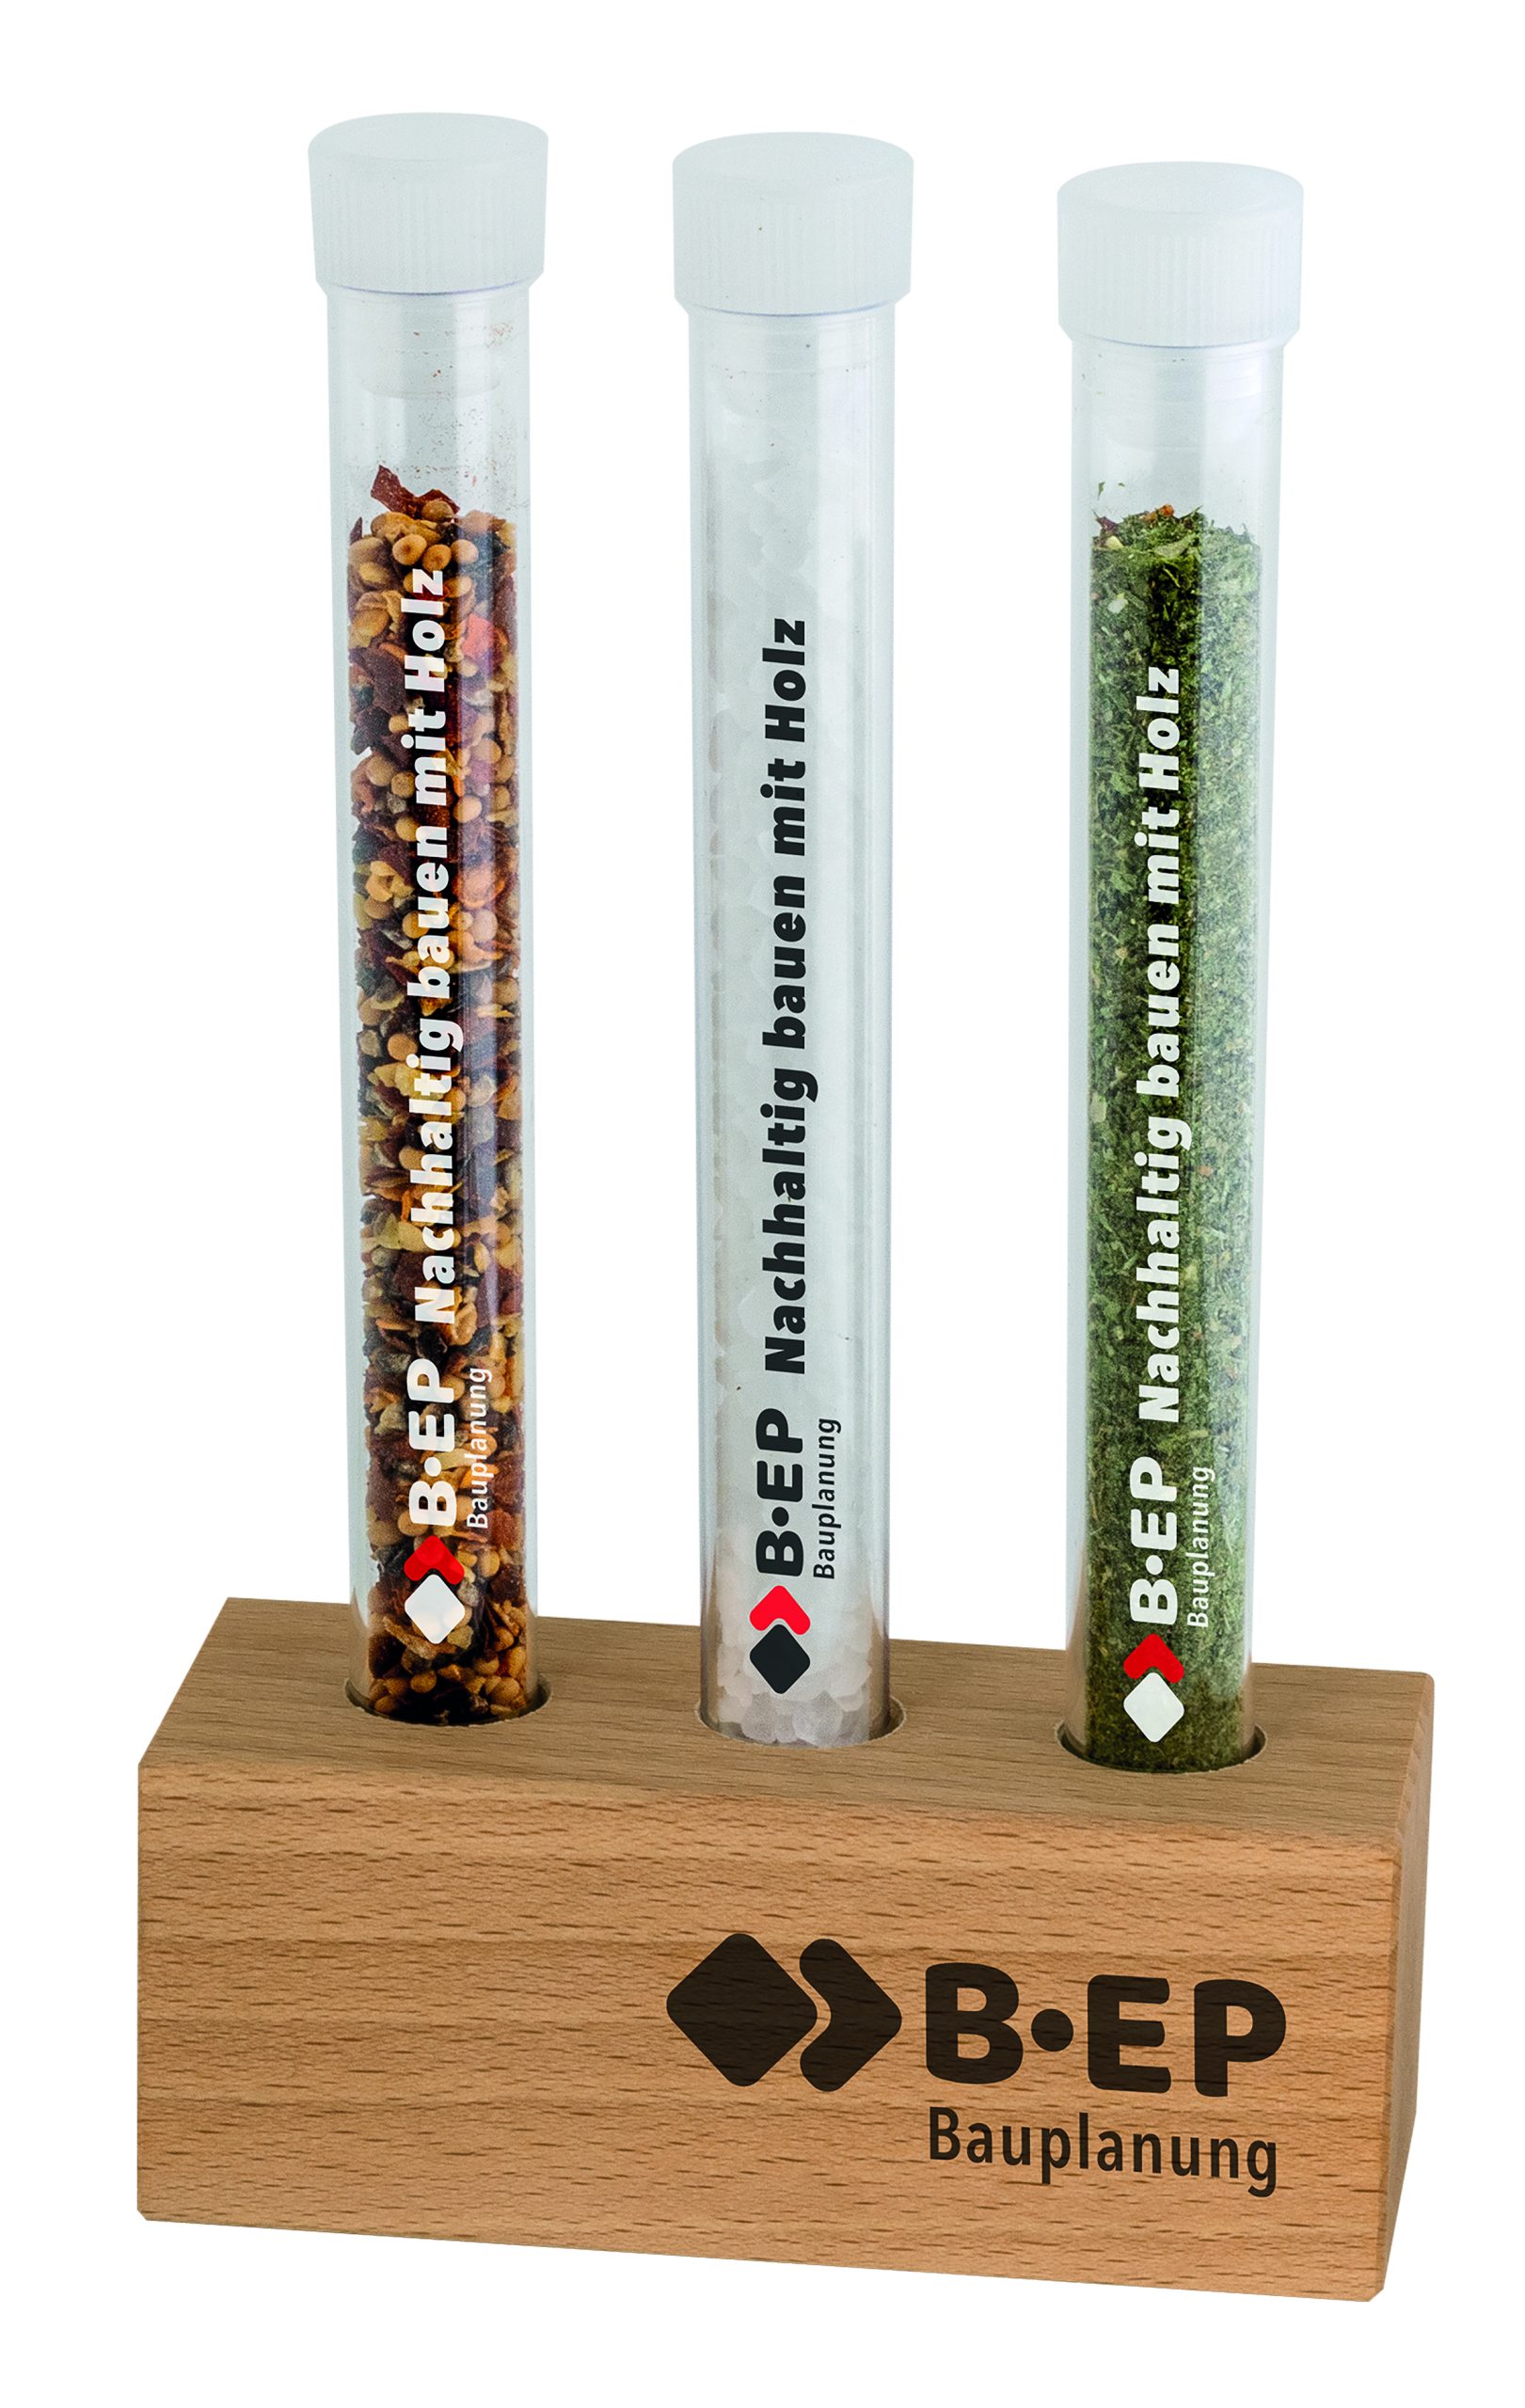 holz-aufsteller-reagenzglas-wooden-display-test-tubes-1